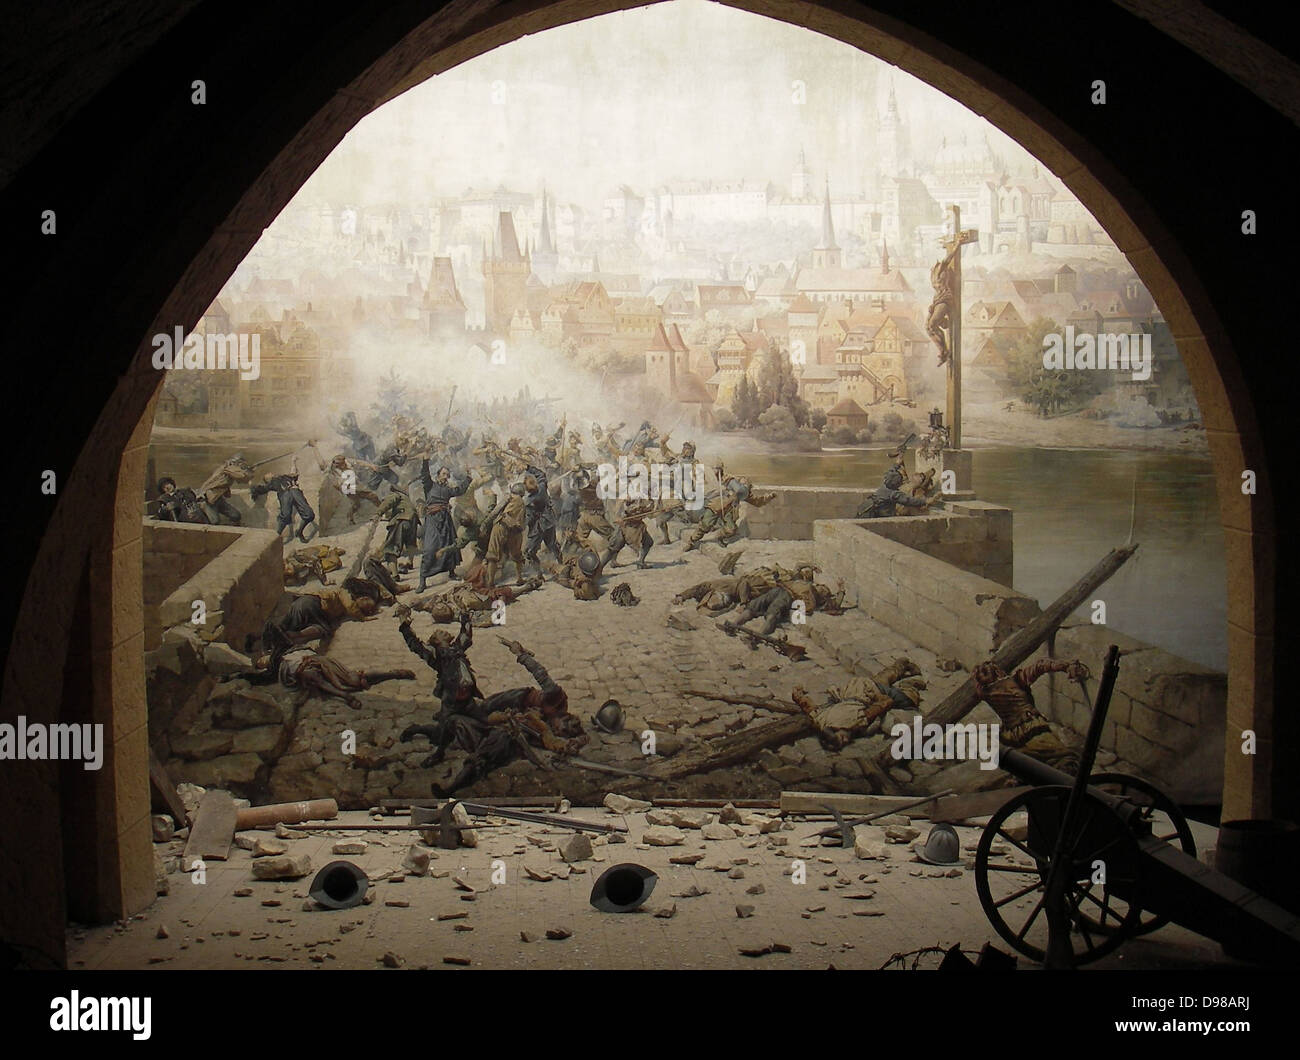 Schlacht auf der Karlsbrücke in Prag im Jahre 1648, nach dem Dreißigjährigen Krieg zu stoppen. Bild- und Installation für die Prag Ausstellung von 1891 erstellt. Stockfoto